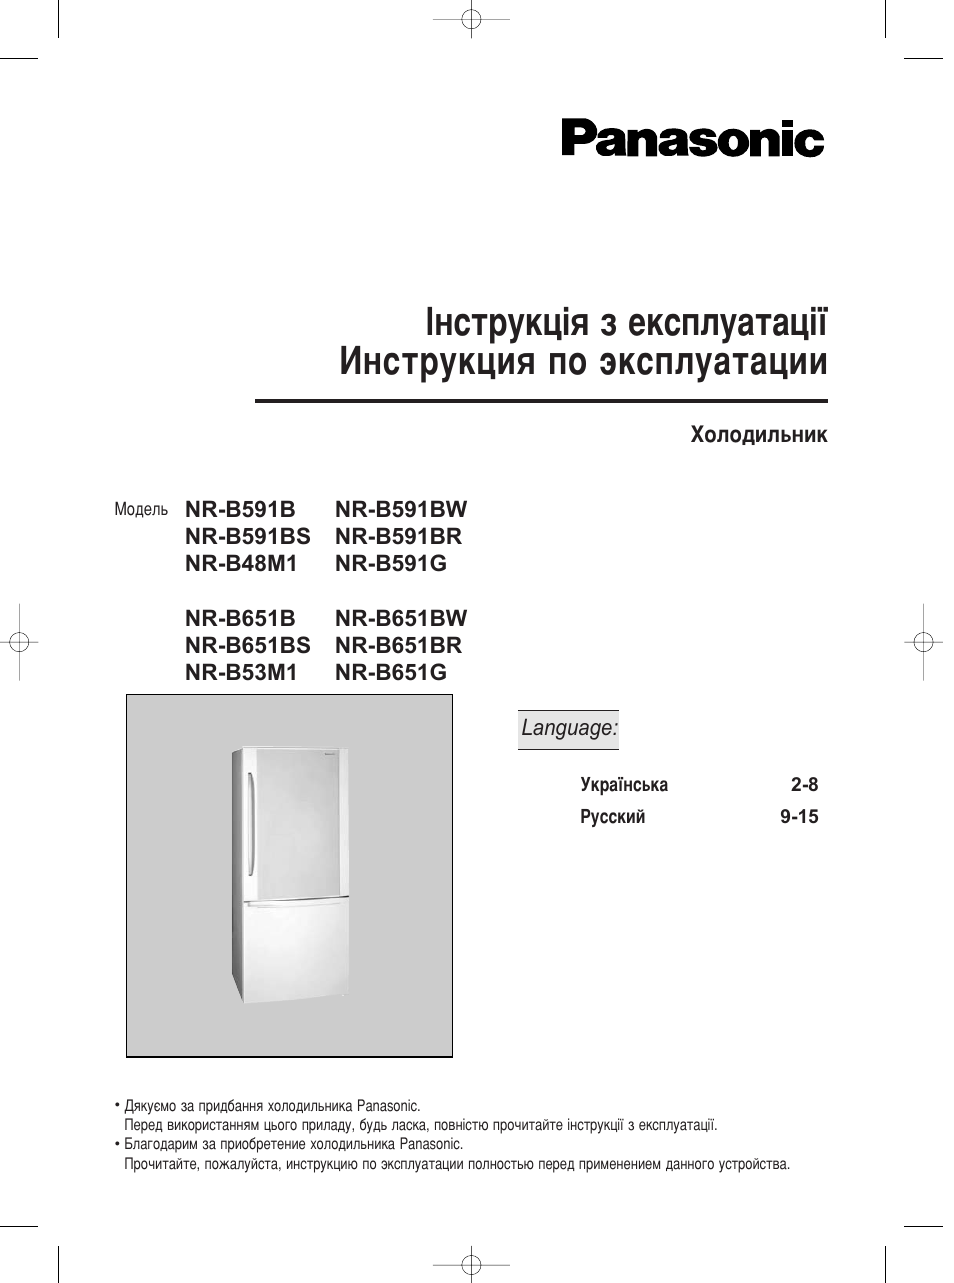 Инструкция по эксплуатации Panasonic NR-B591BR-X4 | 8 страниц